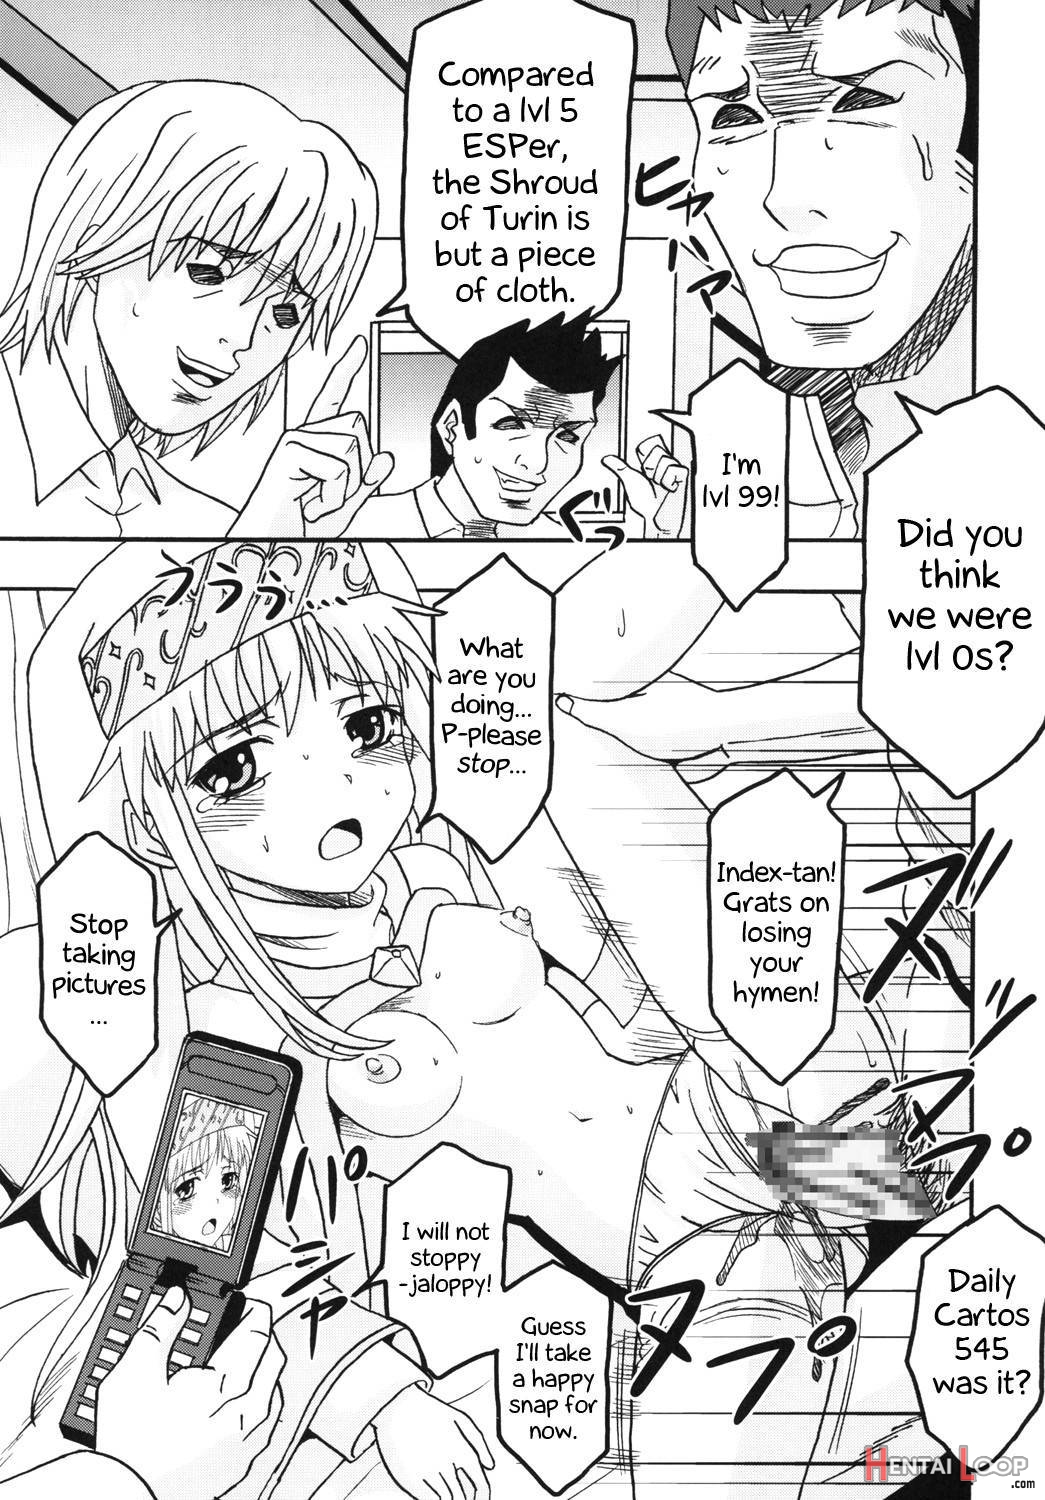 Toaru Otaku no Index #1 page 6